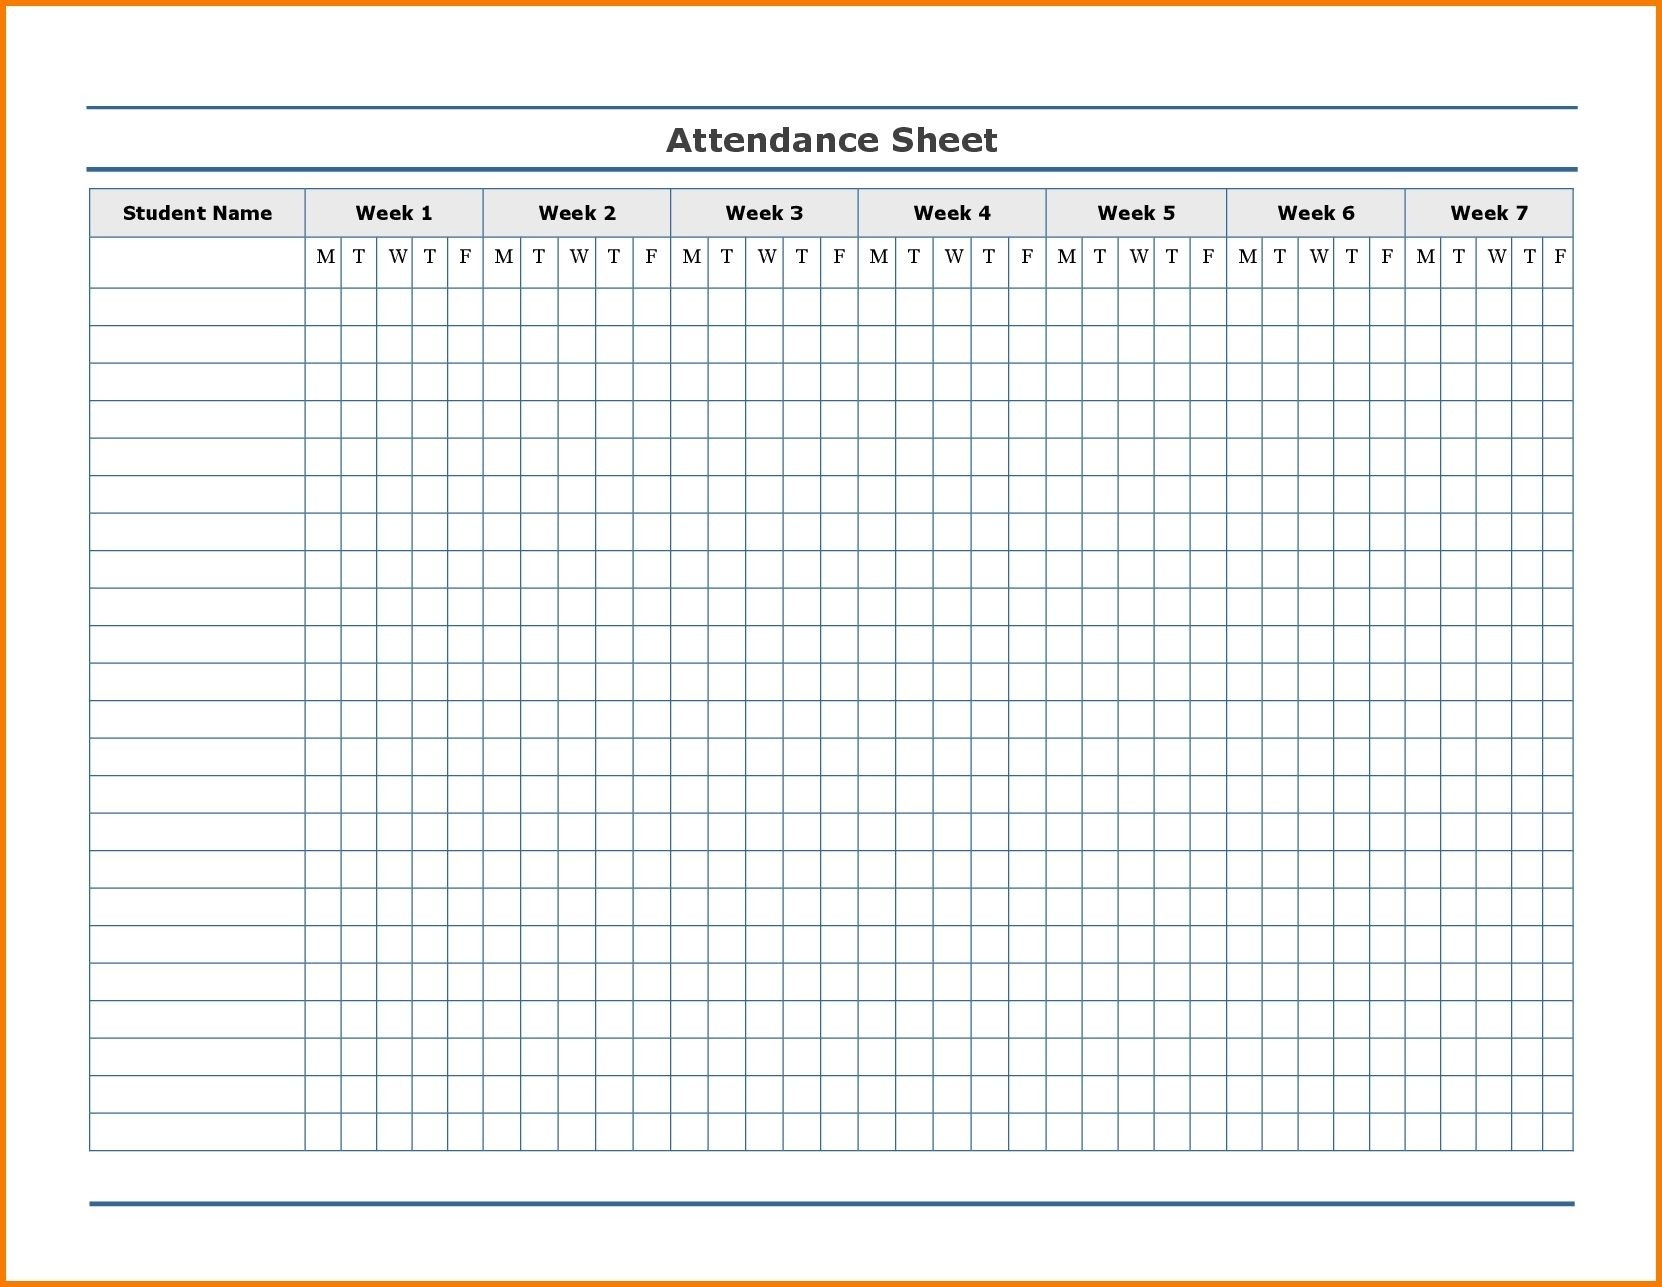 Free Employee Attendance Calendar | Employee Tracker-Printable Employee Attendance Calendar 2021